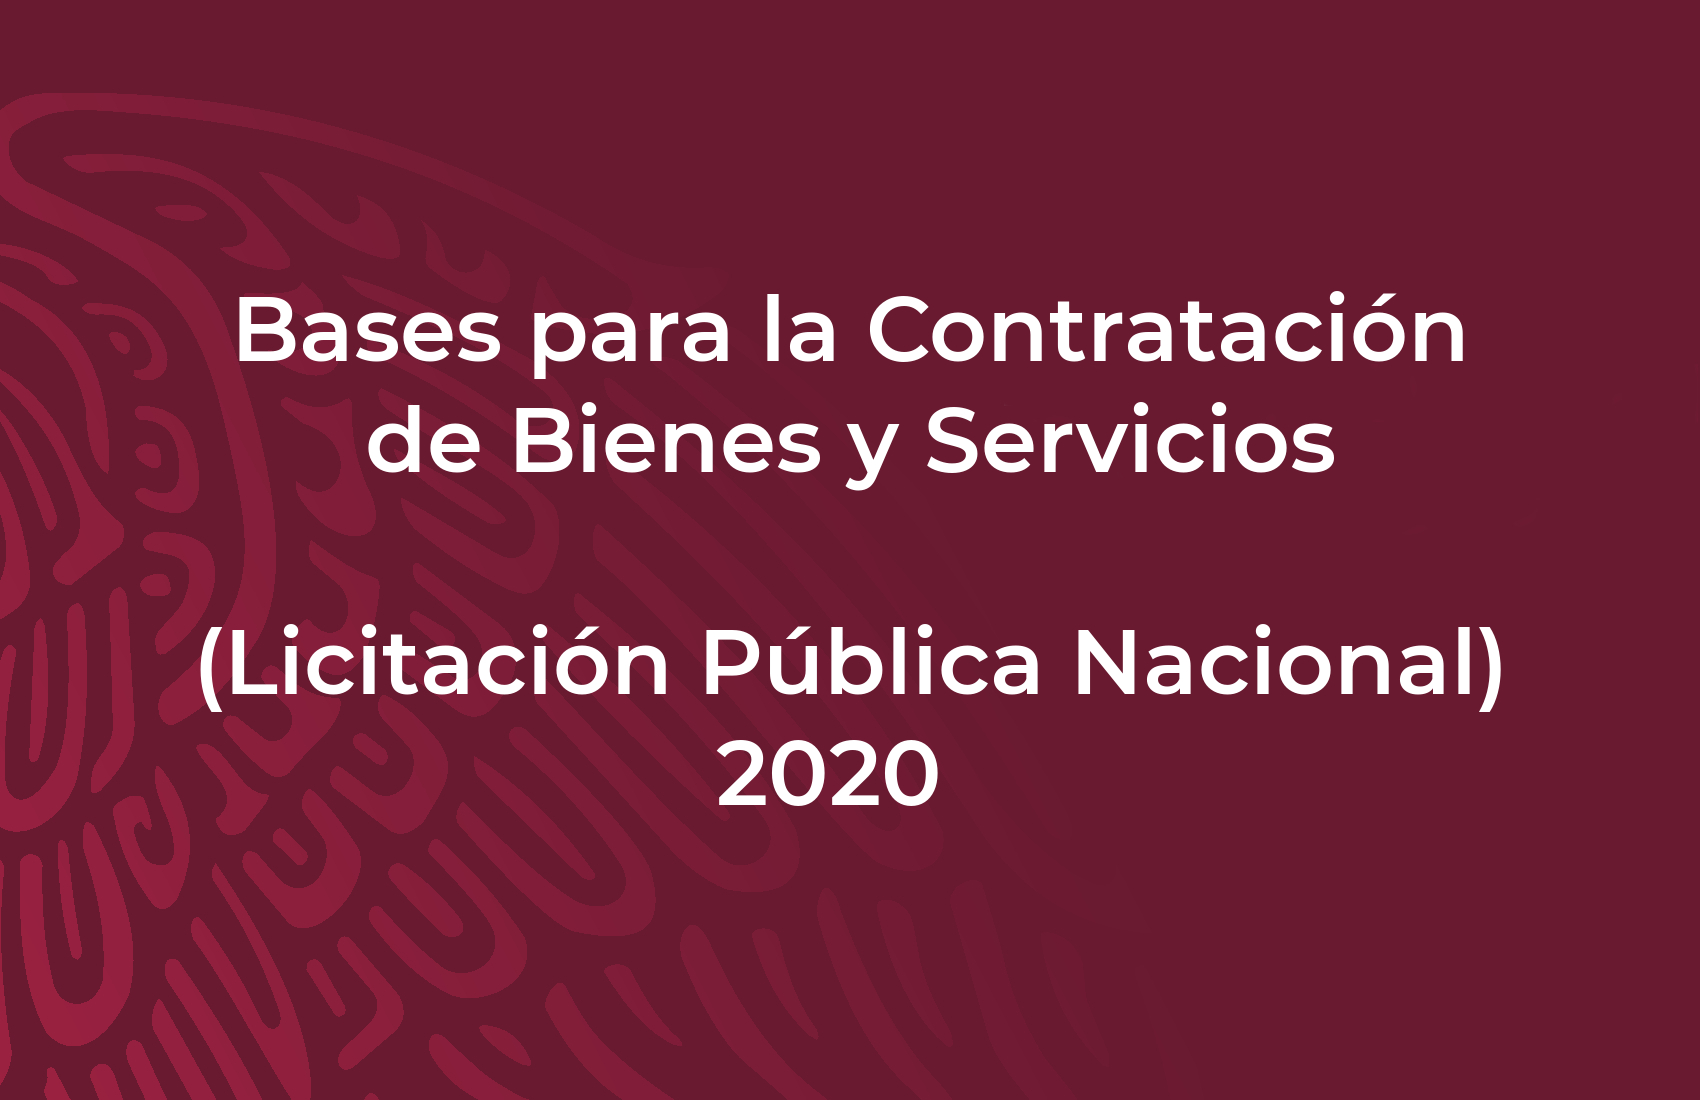 Bases para la Contratación de Bienes y Servicios (Licitación Pública Nacional) 2020